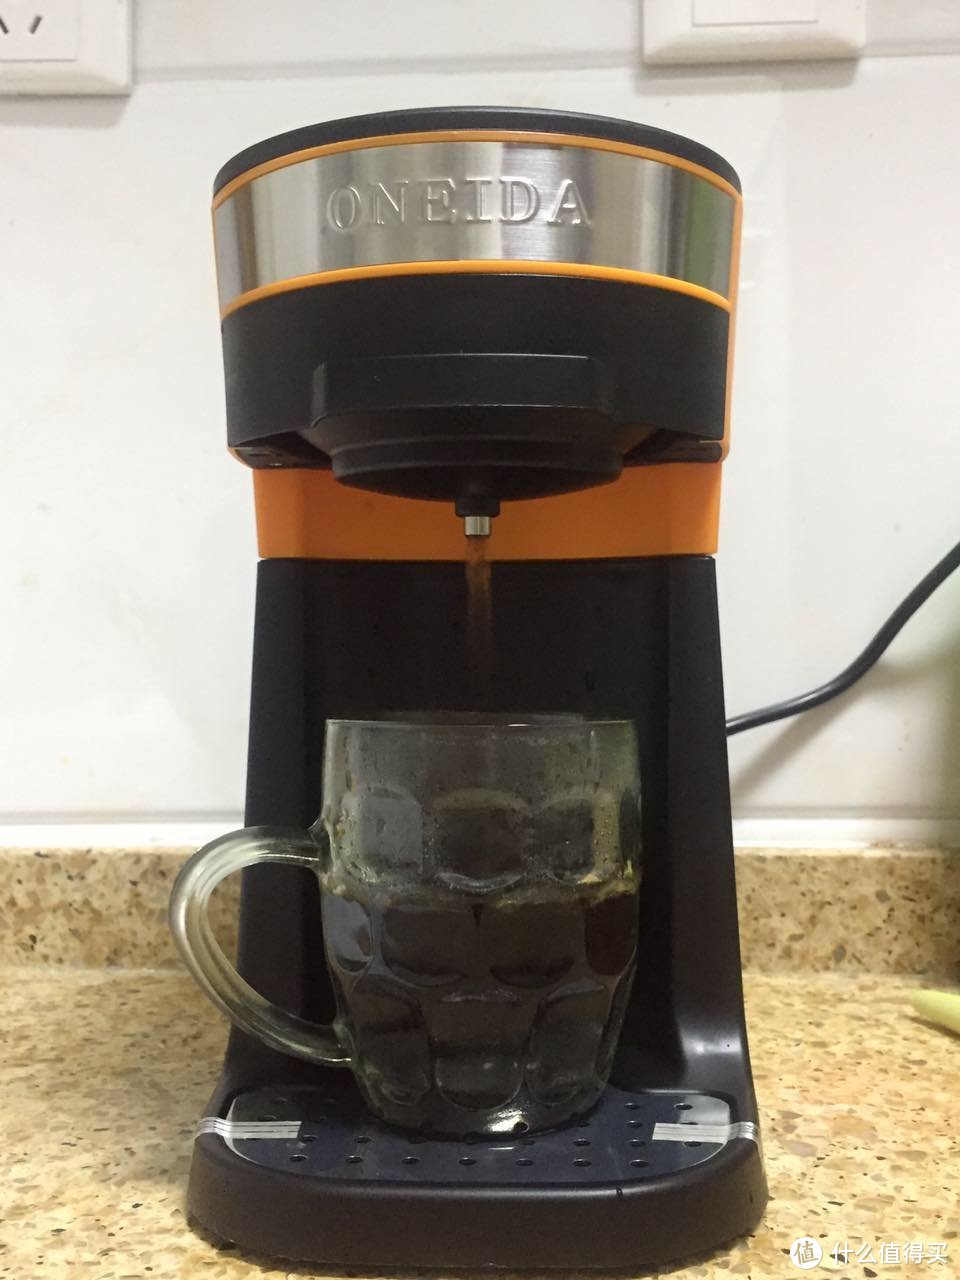 入门级咖啡机，懒到极致的奥奈达N1多功能懒人咖啡机测评